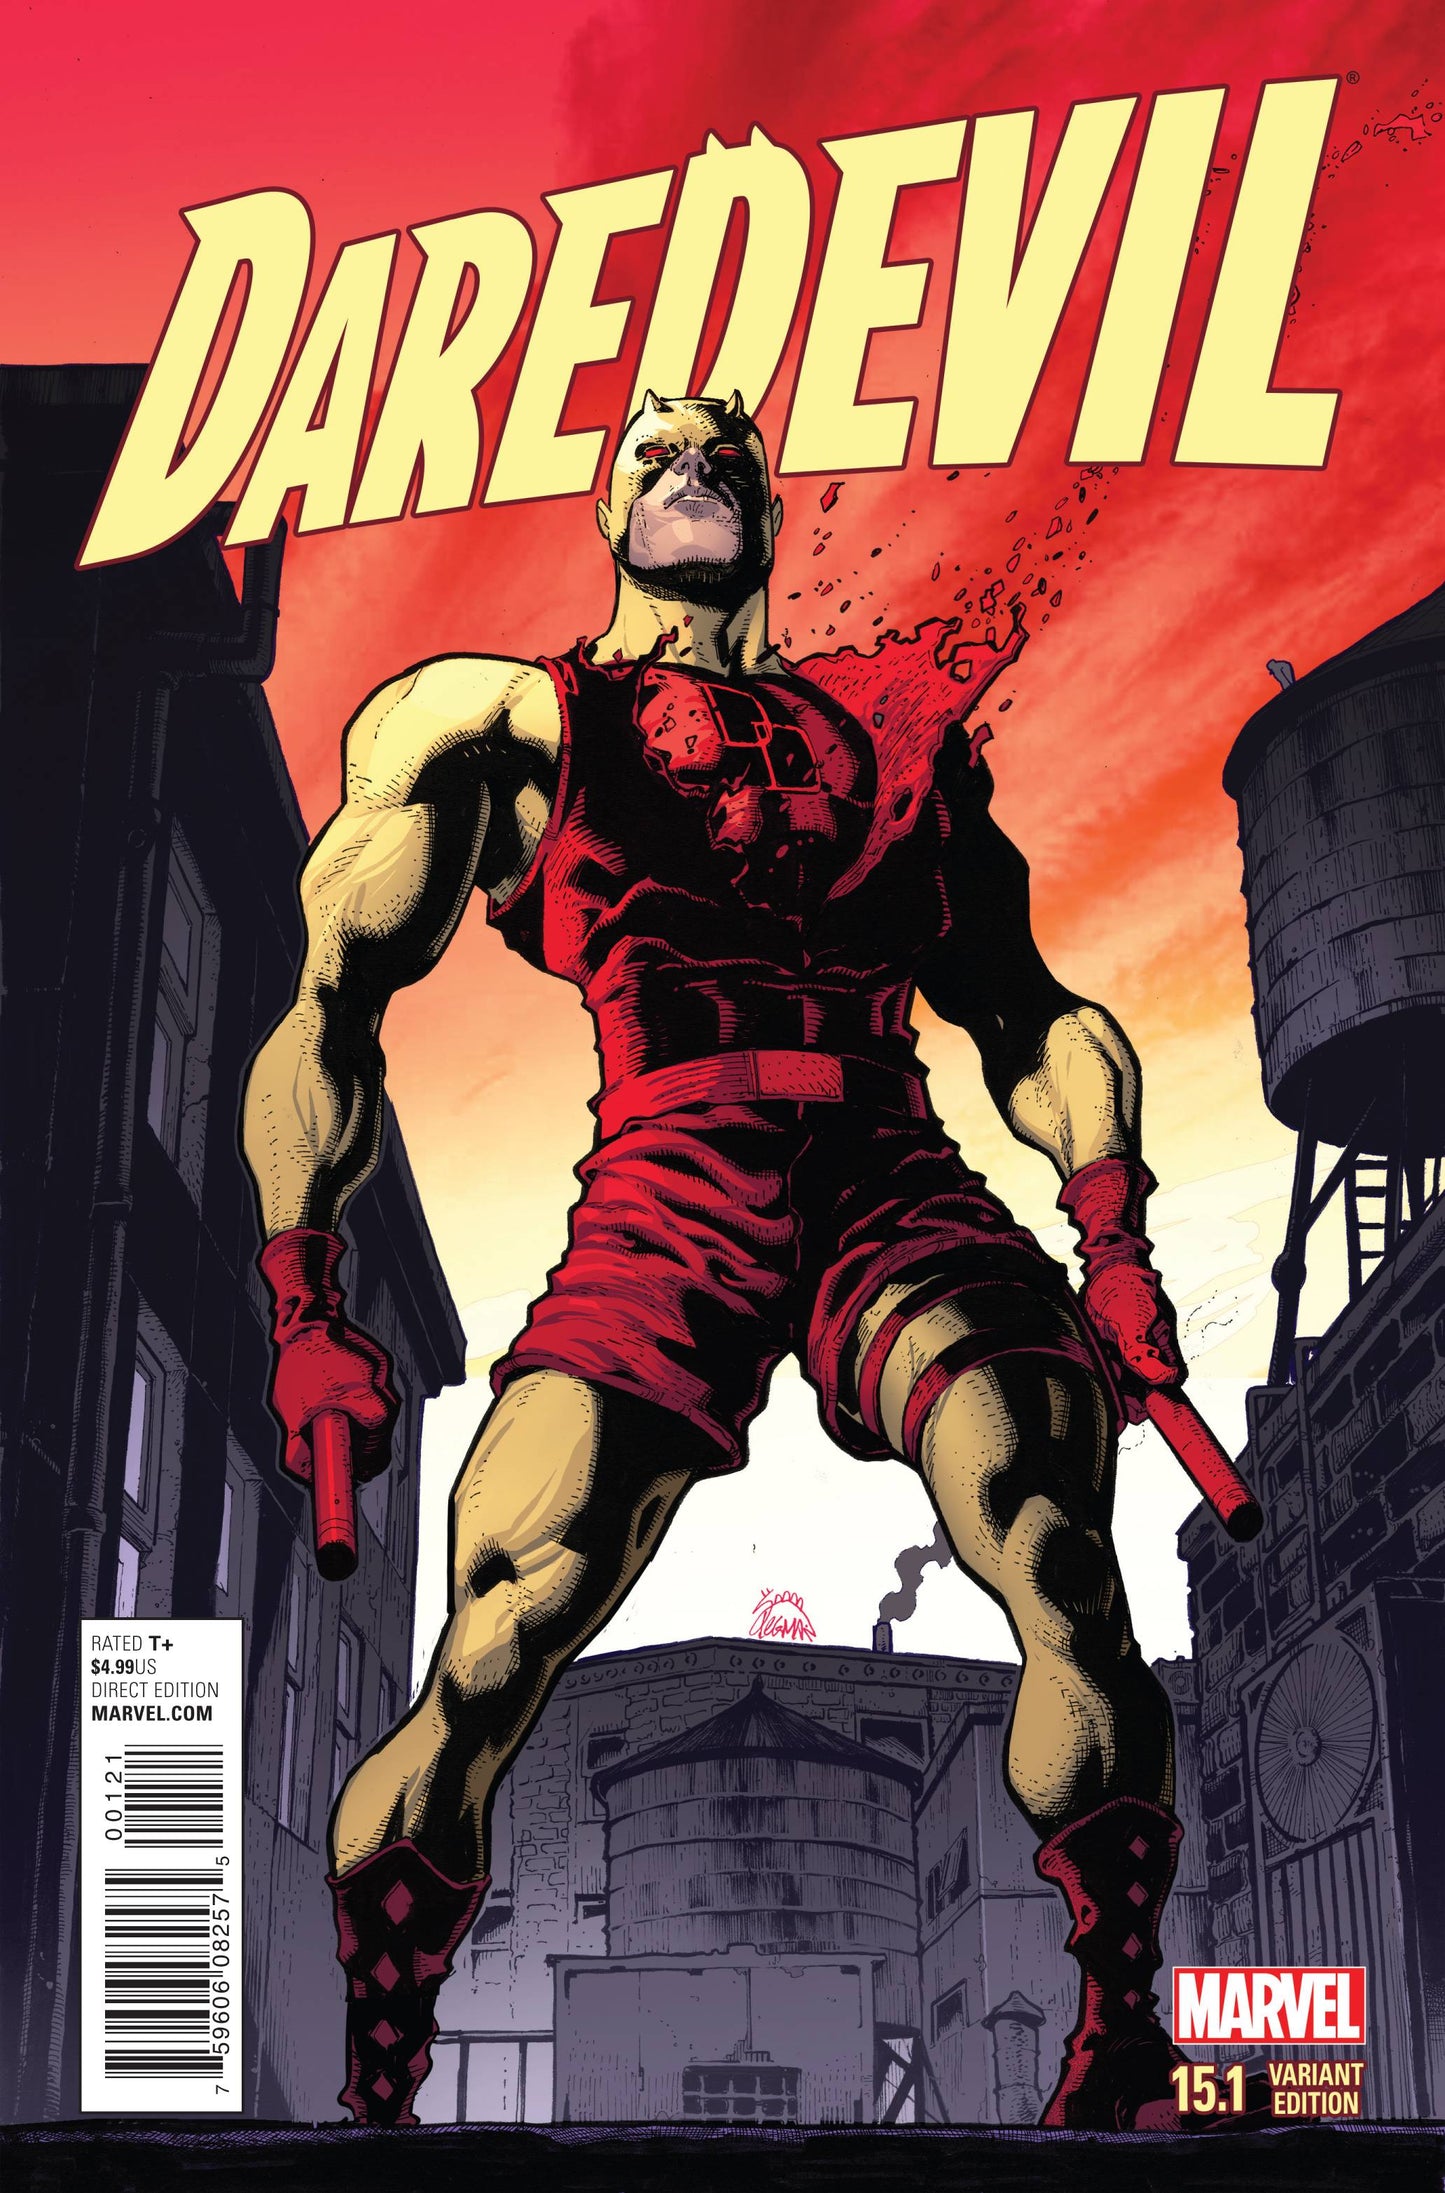 DAREDEVIL #15.1 STEGMAN VARIANT 2015 Daredevil MARVEL COMICS   